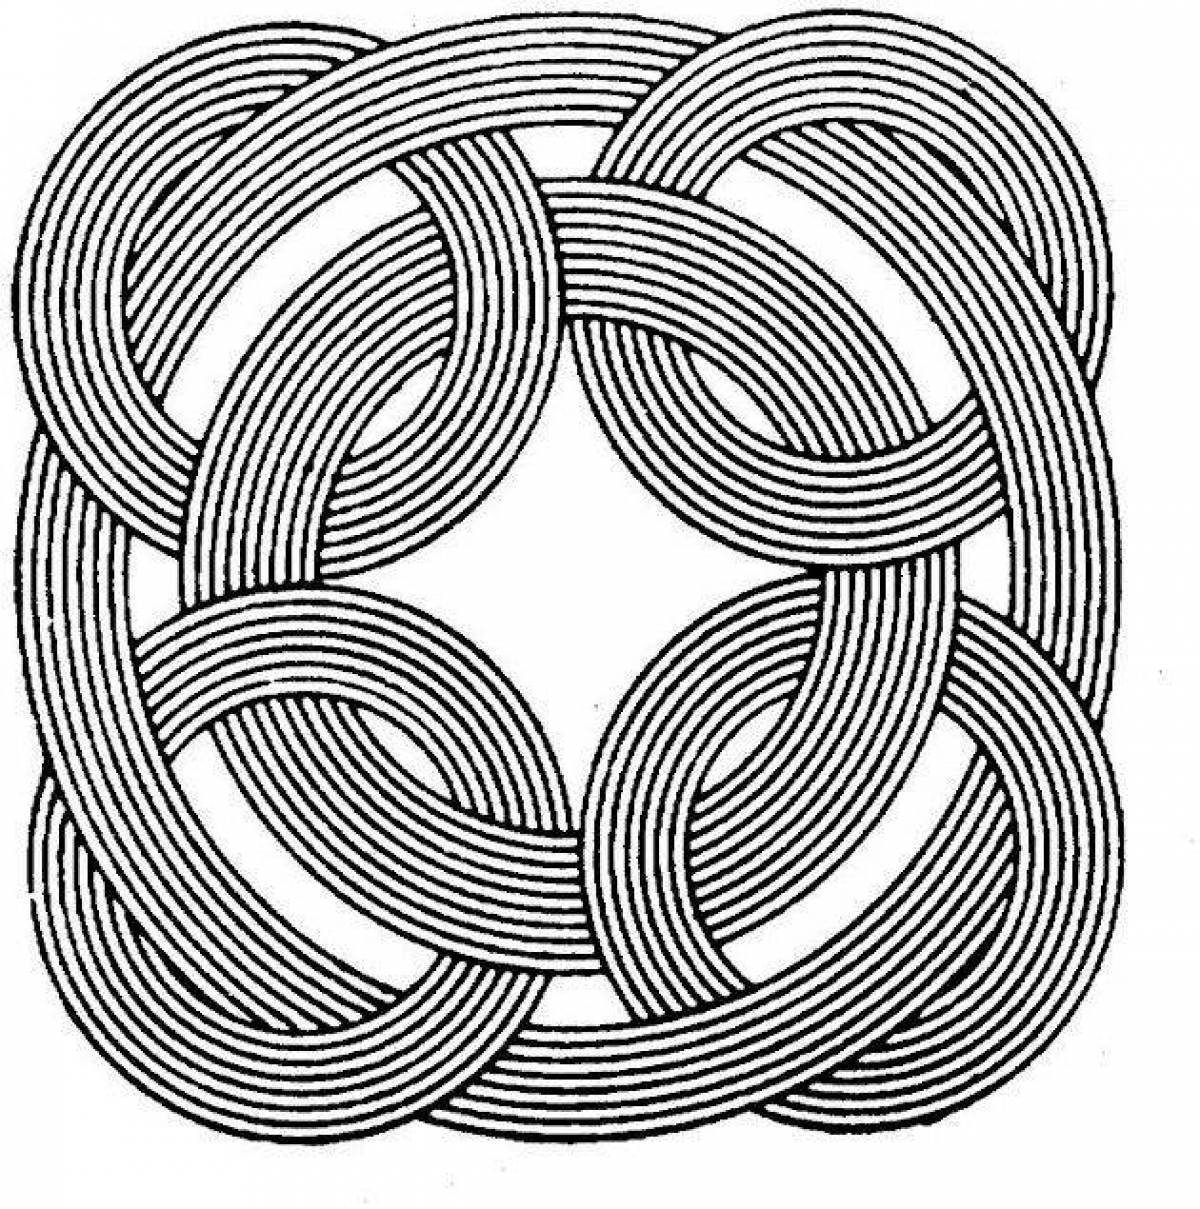 Joyful circular spiral coloring